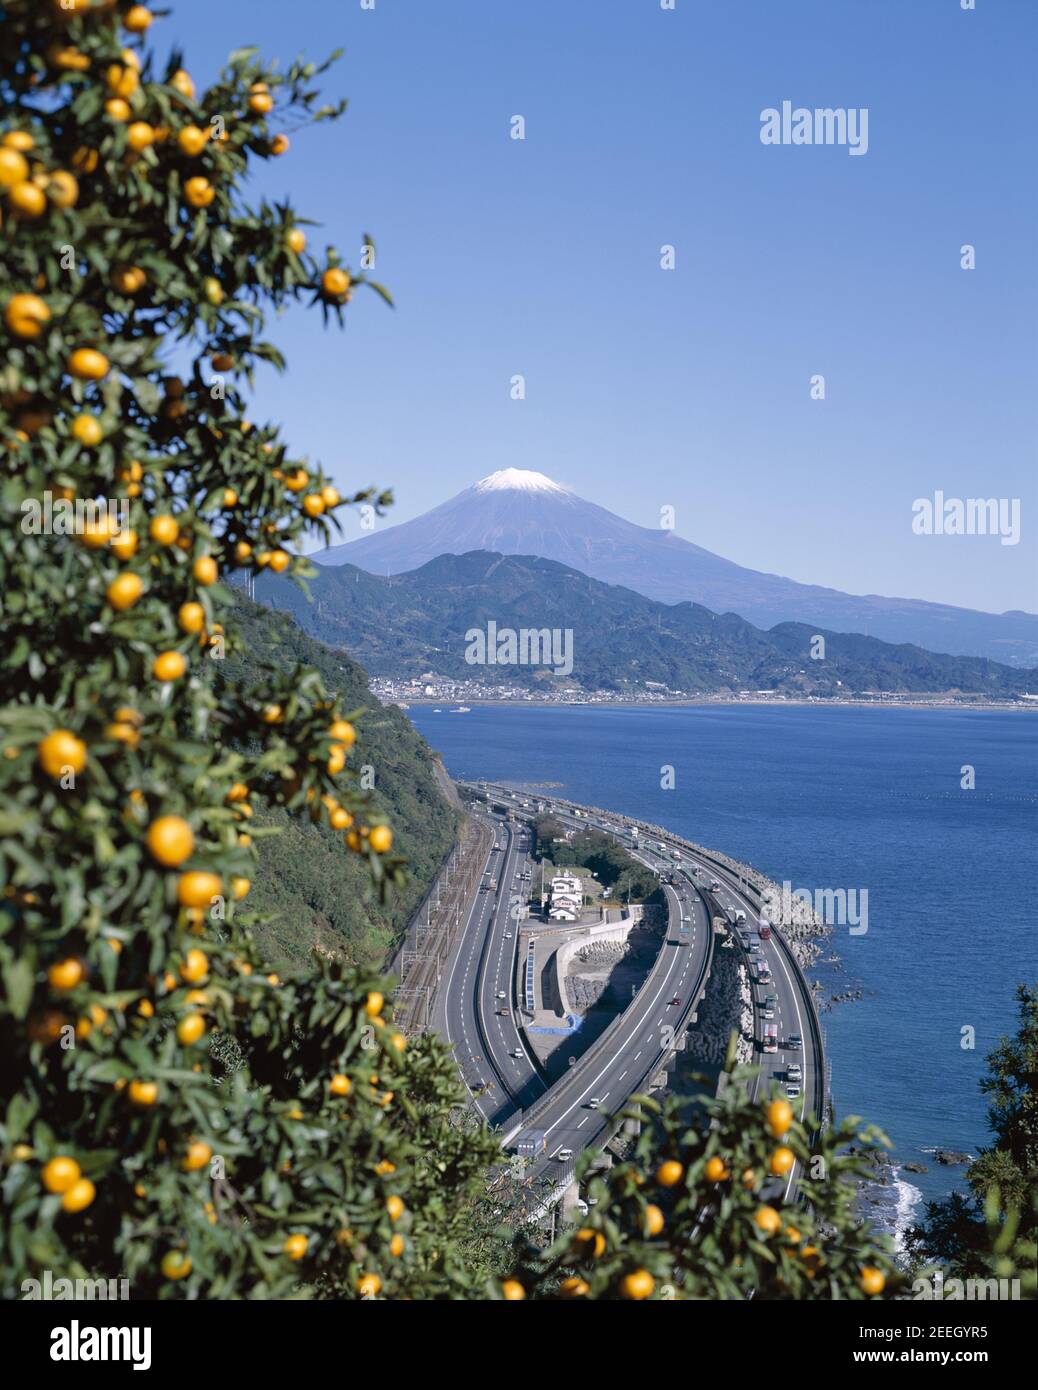 Giappone, Honshu, Prefettura di Yamanashi, cime innevate del Monte Fuji e autostrada costiera Foto Stock